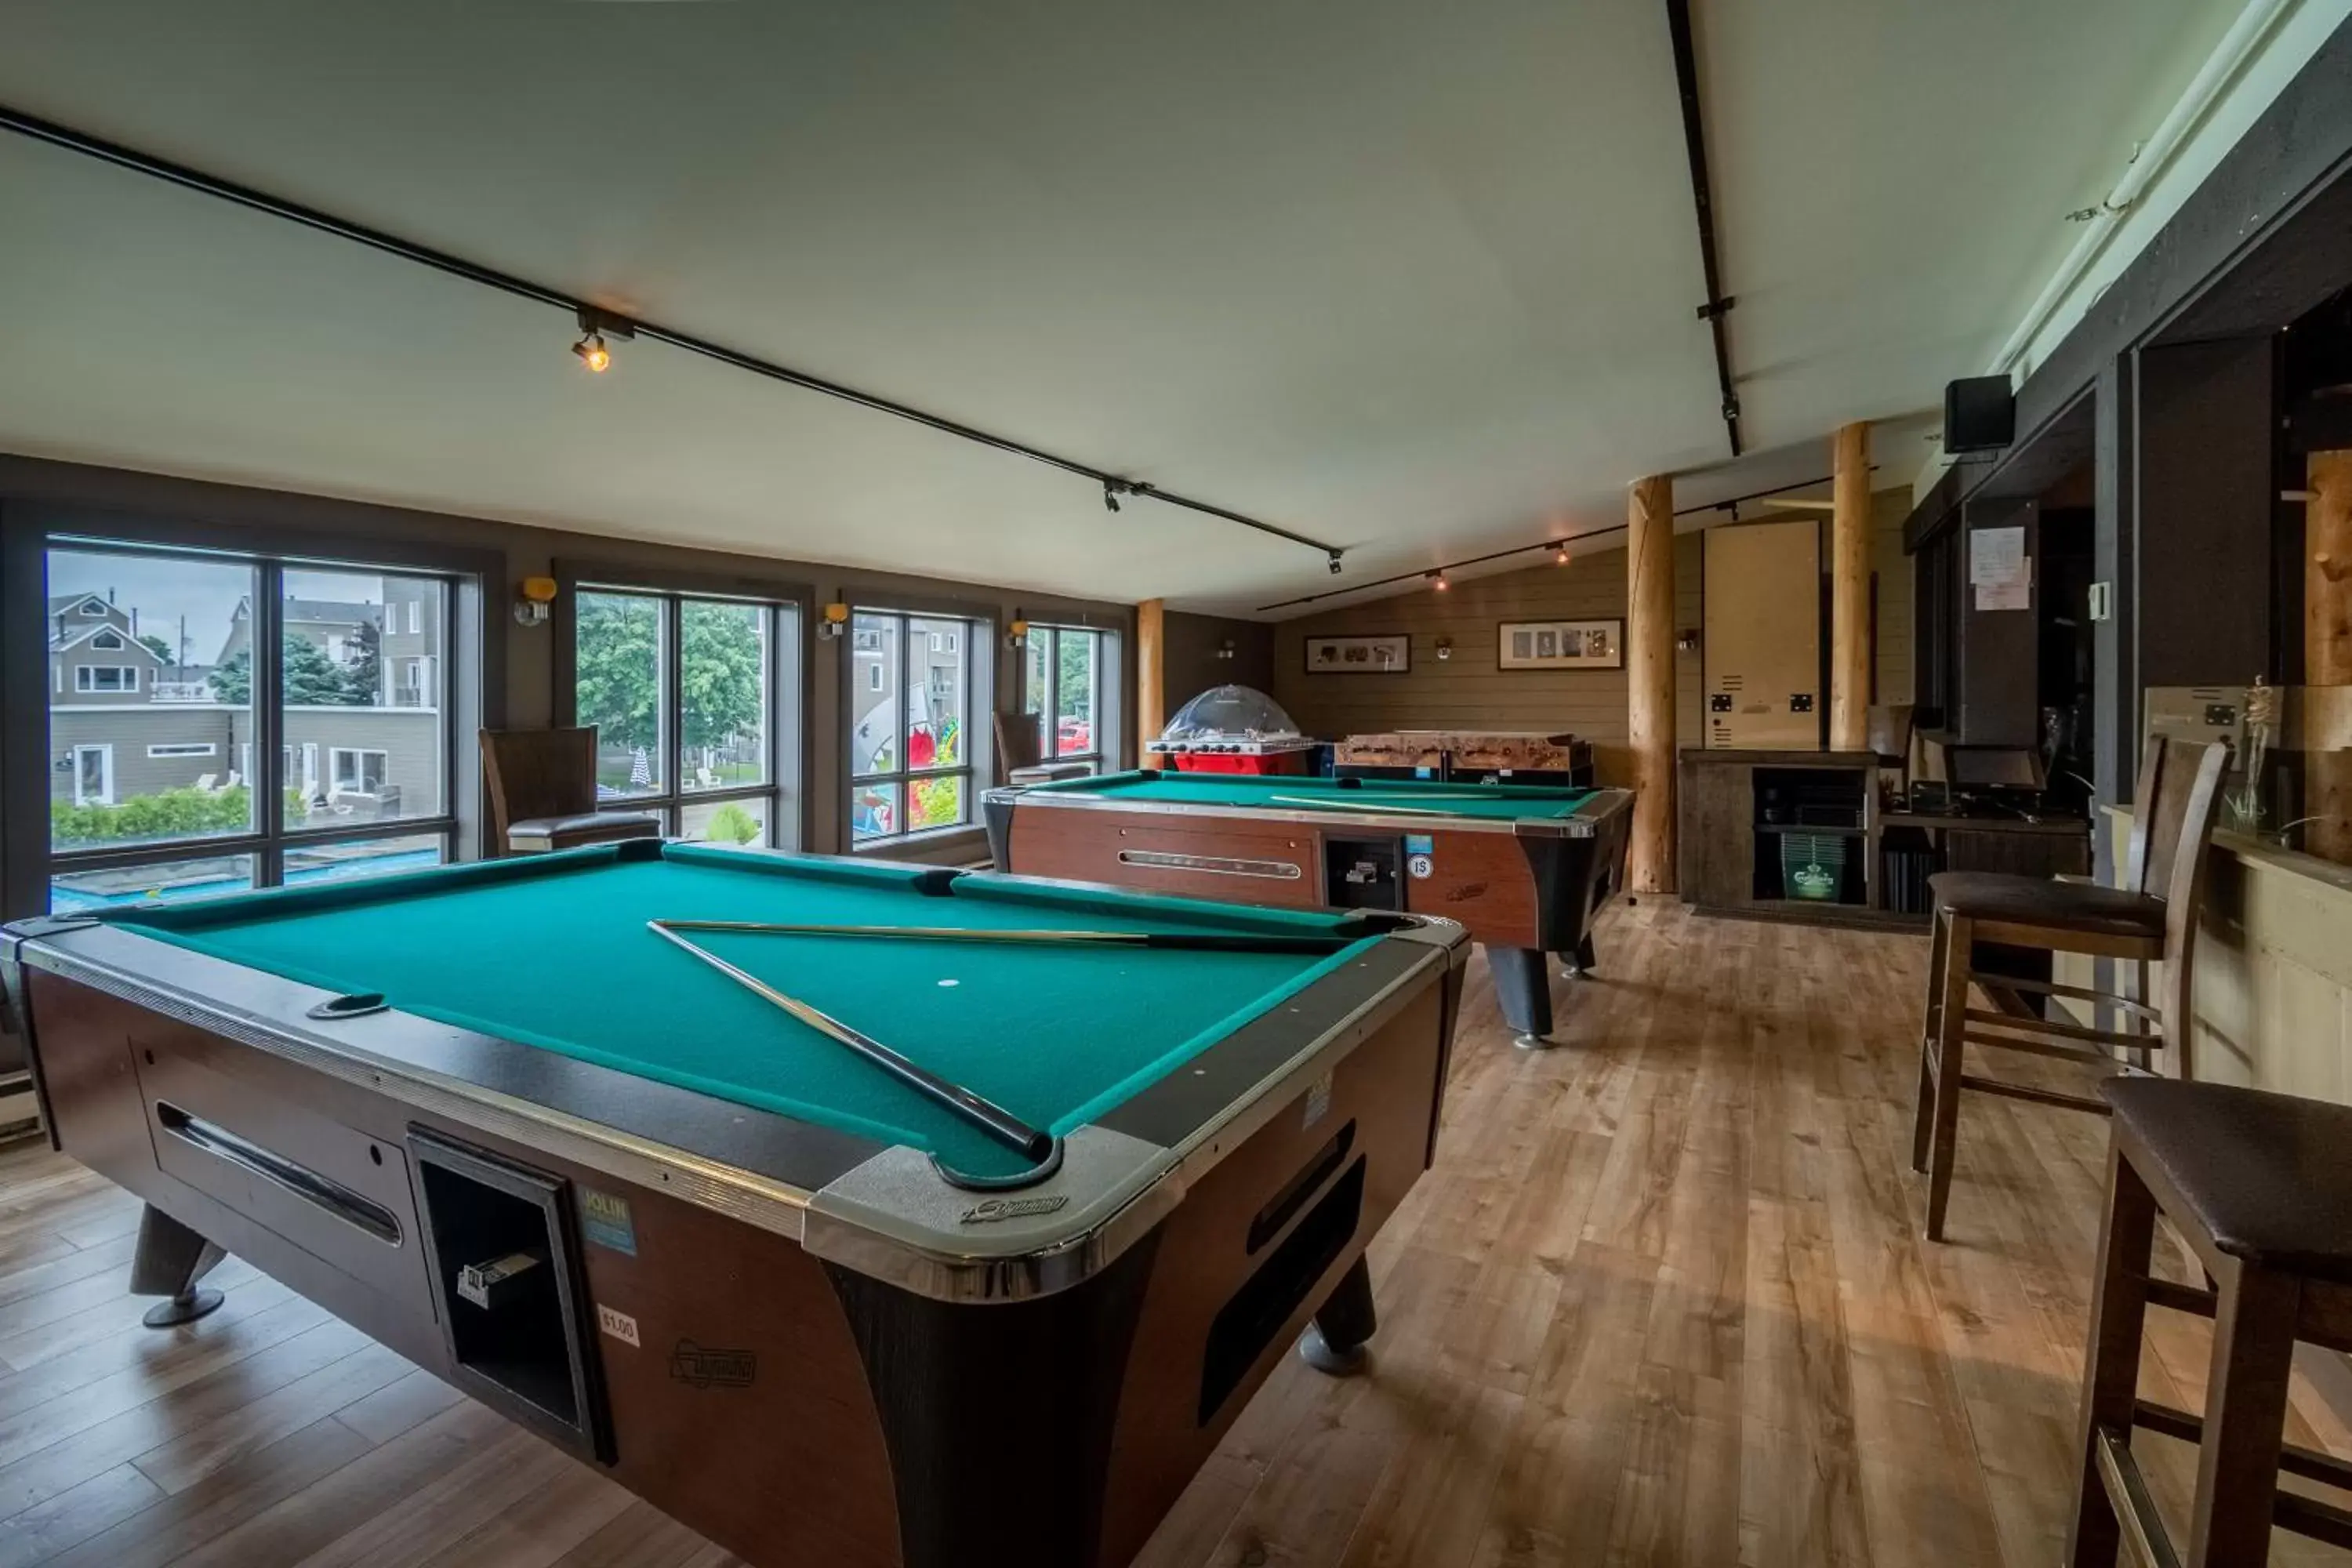 Game Room, Billiards in Condos Vacances MSA HOTEL